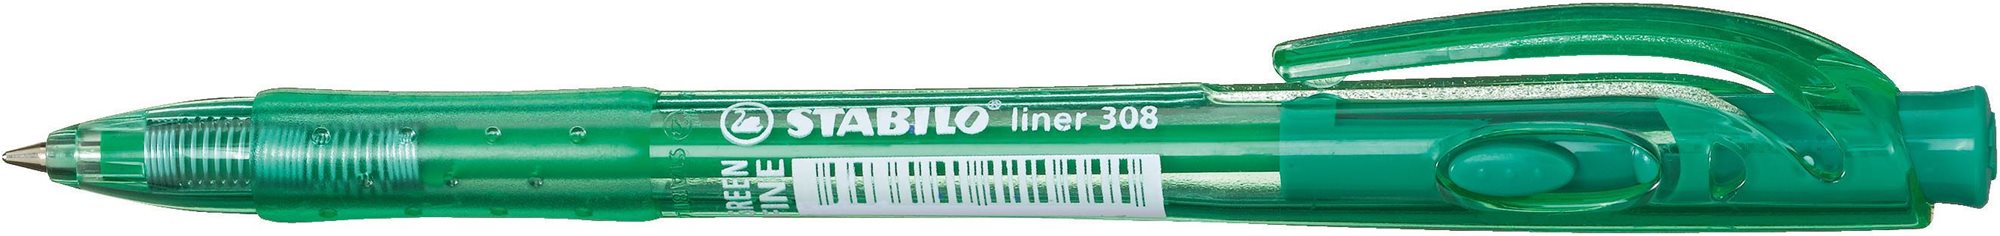 STABILO liner 308, zöld 10 db